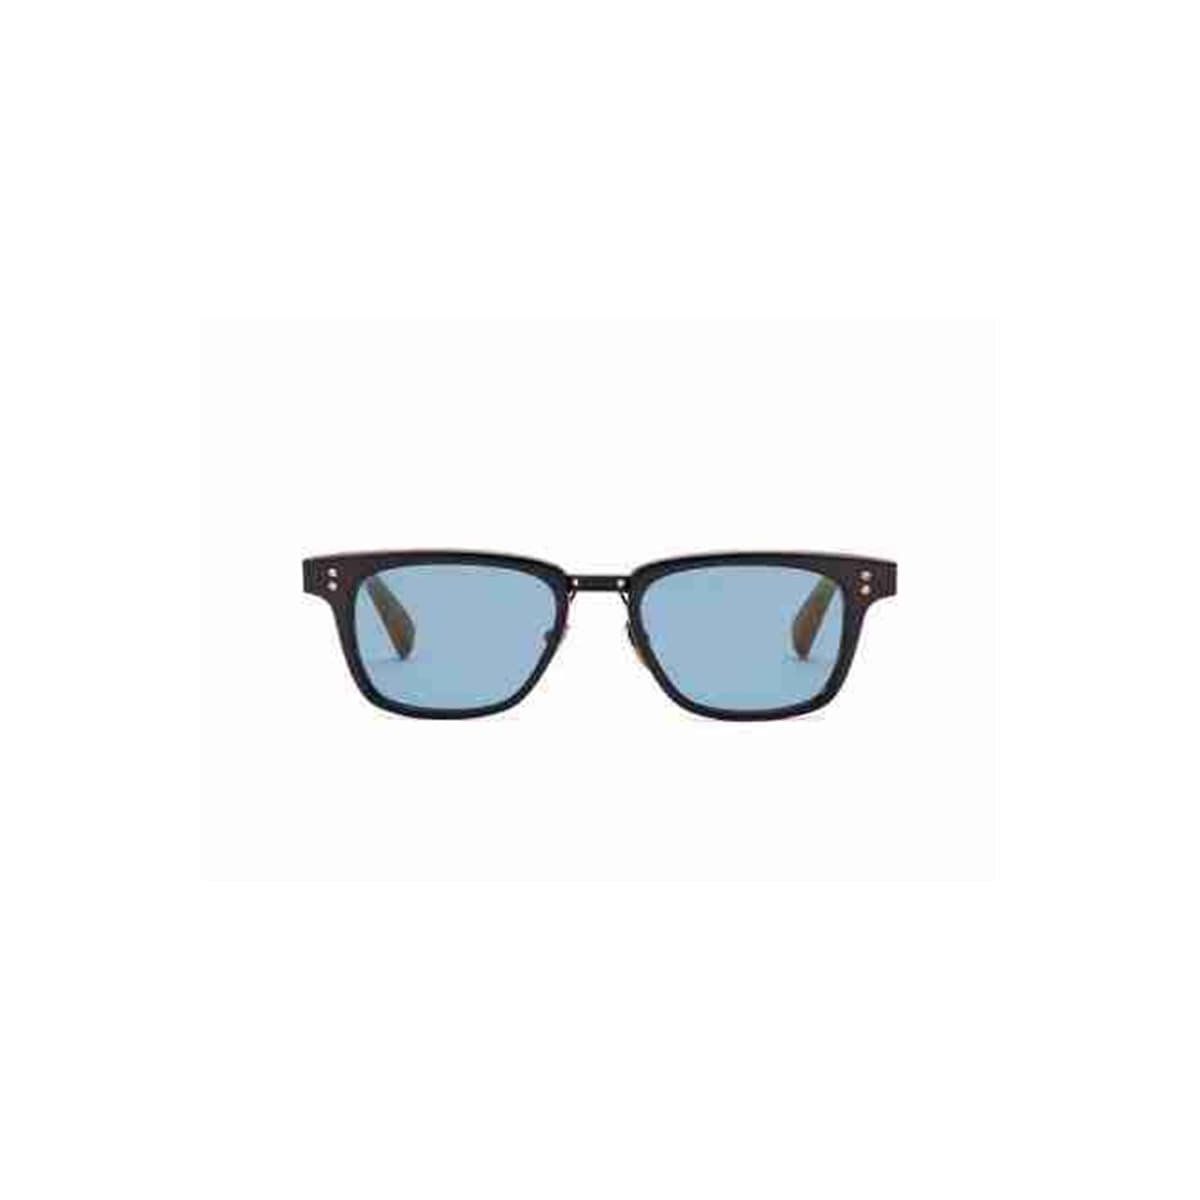 USA alarm Torrent En Ucuz Dita Erkek Güneş Gözlükleri Fiyatları ve Modelleri - Cimri.com